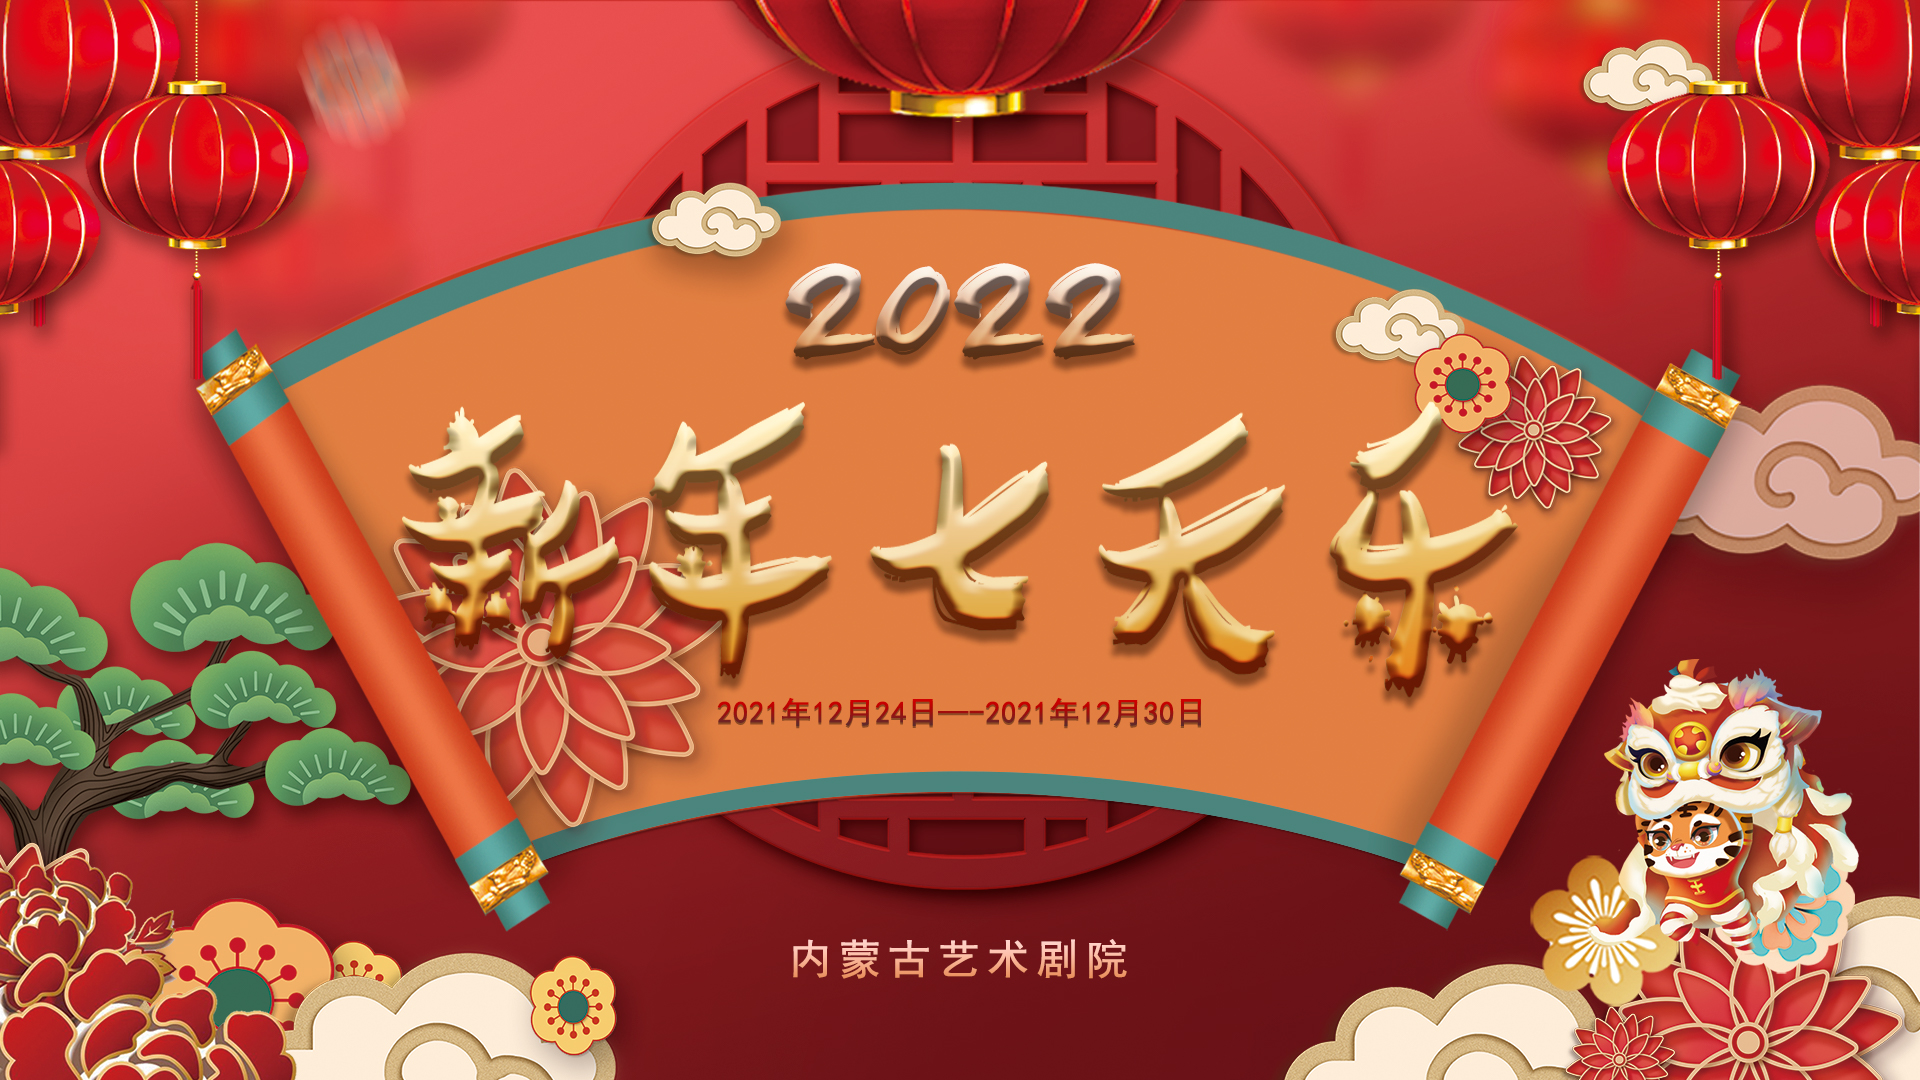 标题：演出预告〡《2022新年七天乐》《2022新年联欢晚会》
点击数：2596
发表时间：2021-12-23